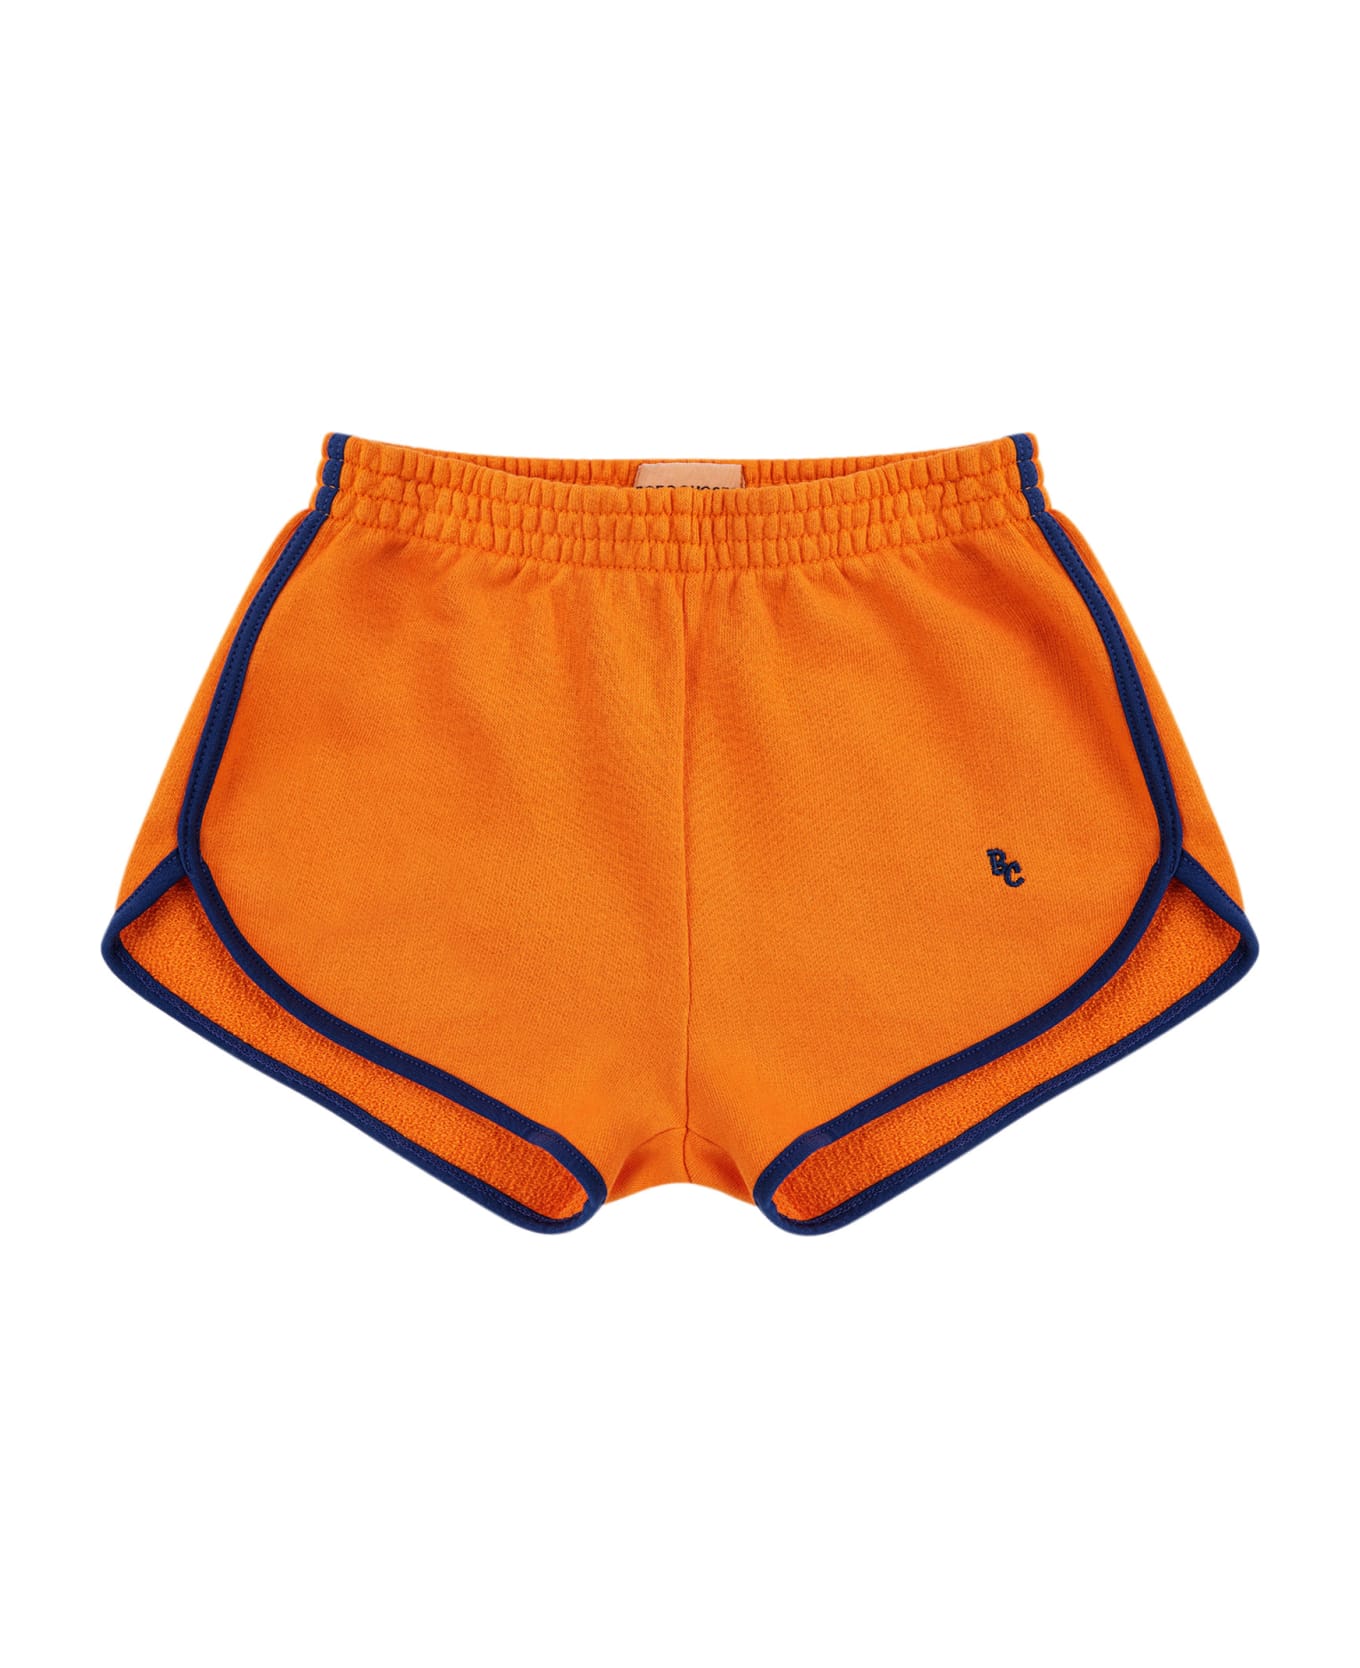 Bobo Choses Orange Shorts For Kids With Logo - Orange ボトムス